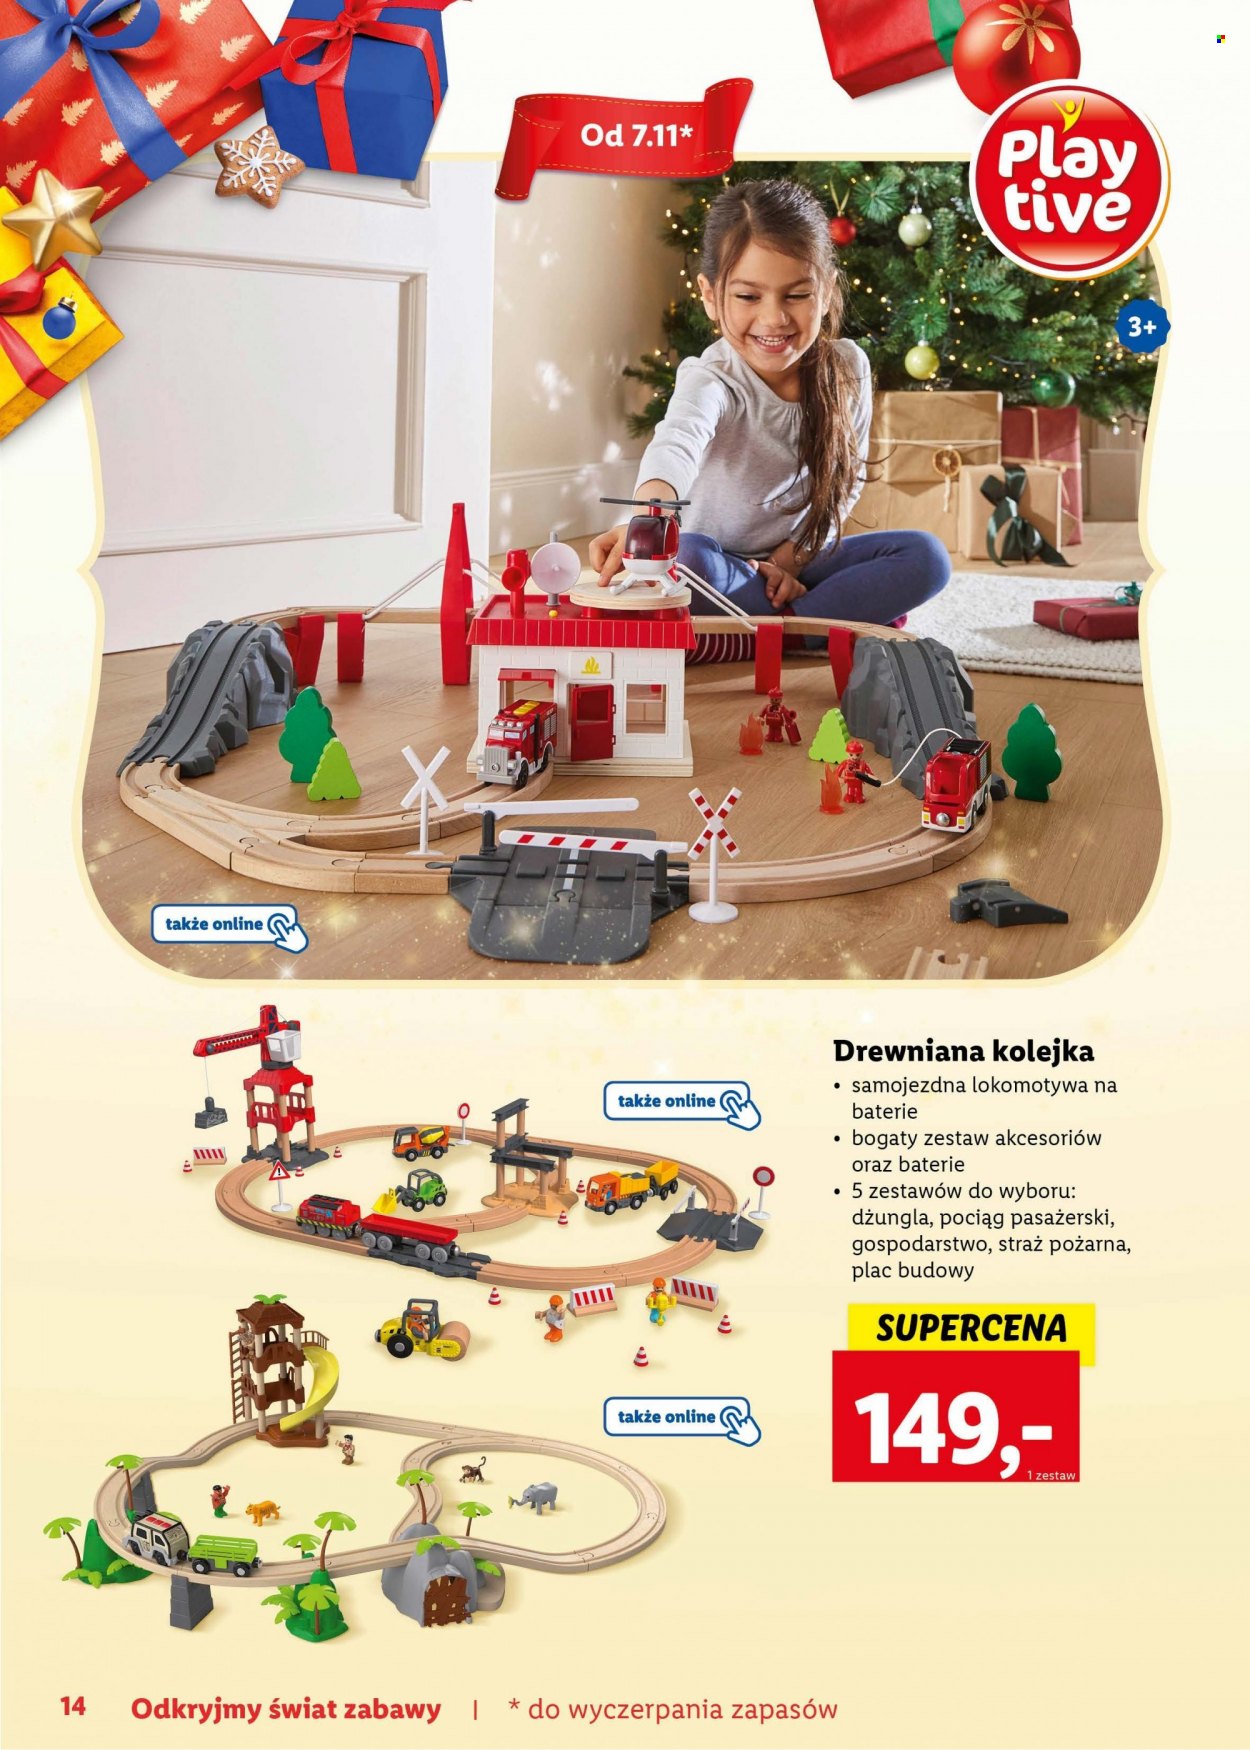 Gazetka Lidl - Produkty w akcji - pociąg pasażerski, pociąg, straż pożarna, drewniana kolejka, zabawki drewniane, kolejka, plac budowy. Strona 14.